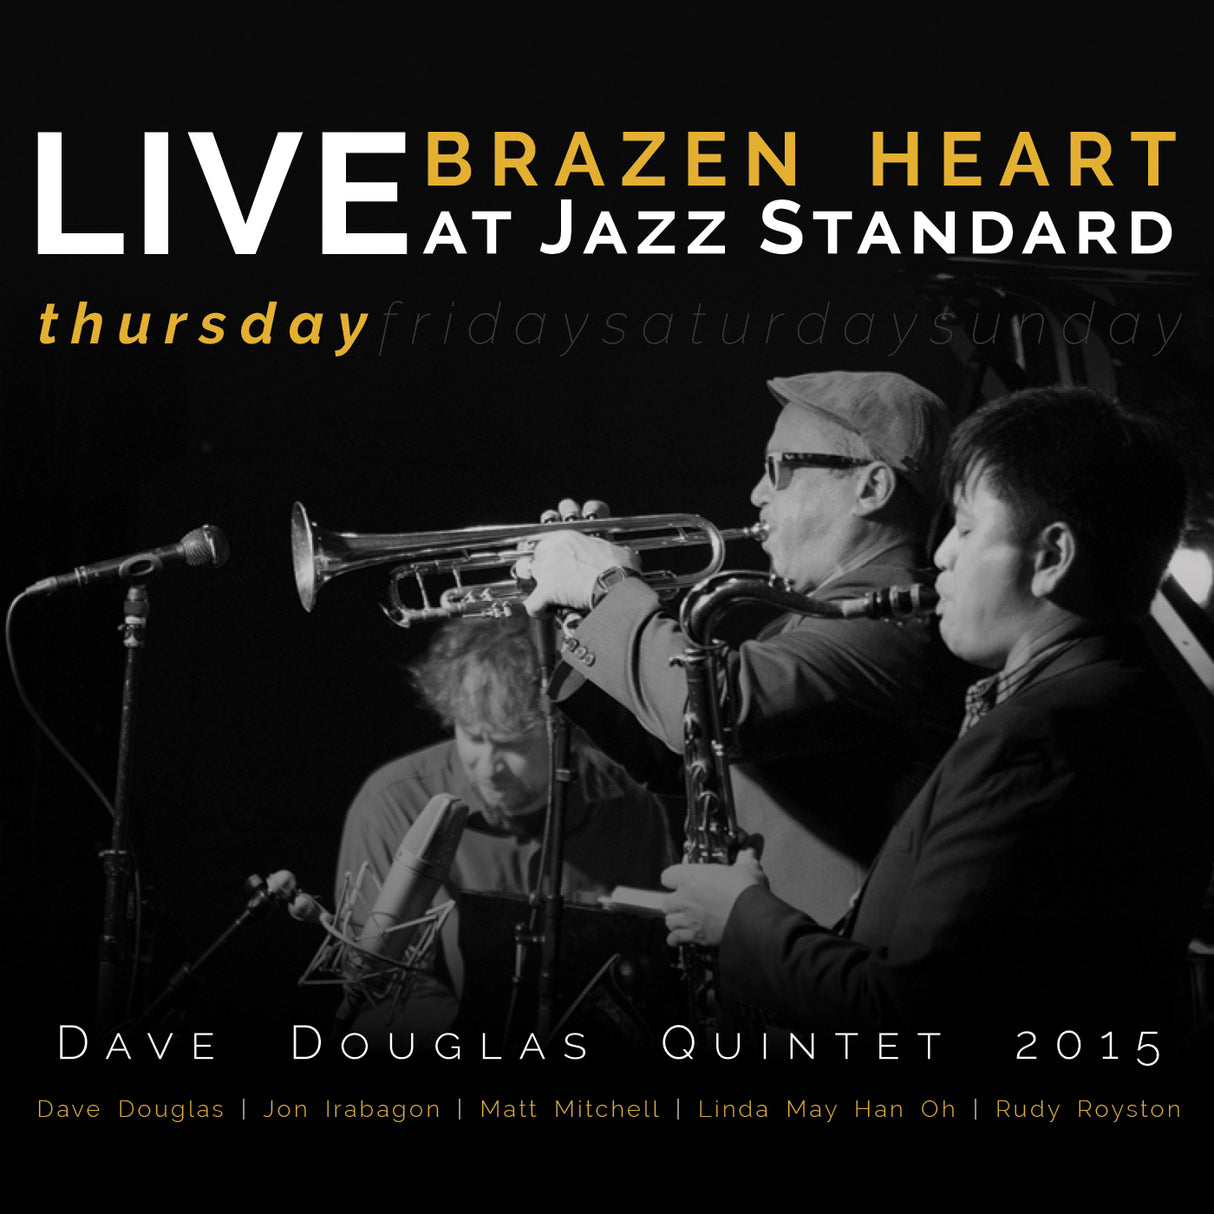 Brazen Heart Live at Jazz Standard - Thursday [CD]